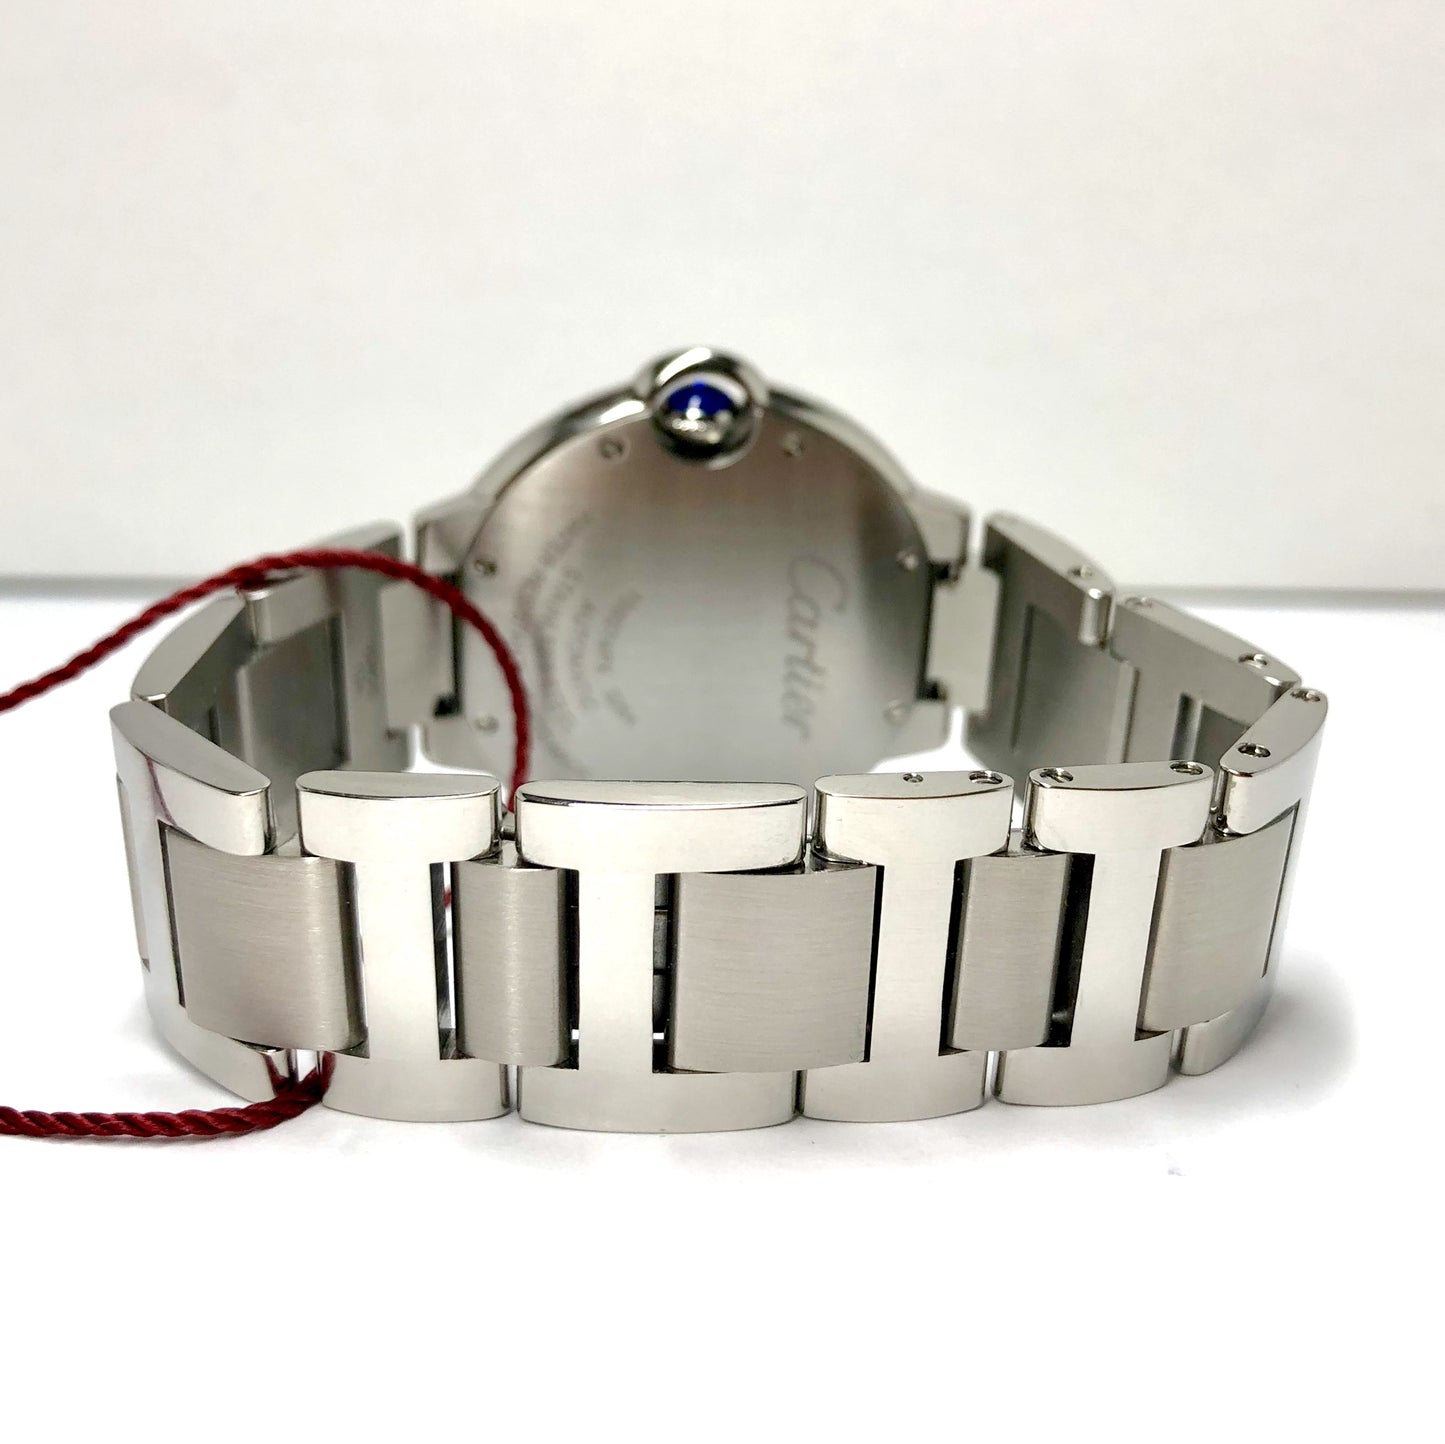 CARTIER BALLON BLEU 3284 Automatic Steel 36mm 1.87TCW DIAMOND Watch